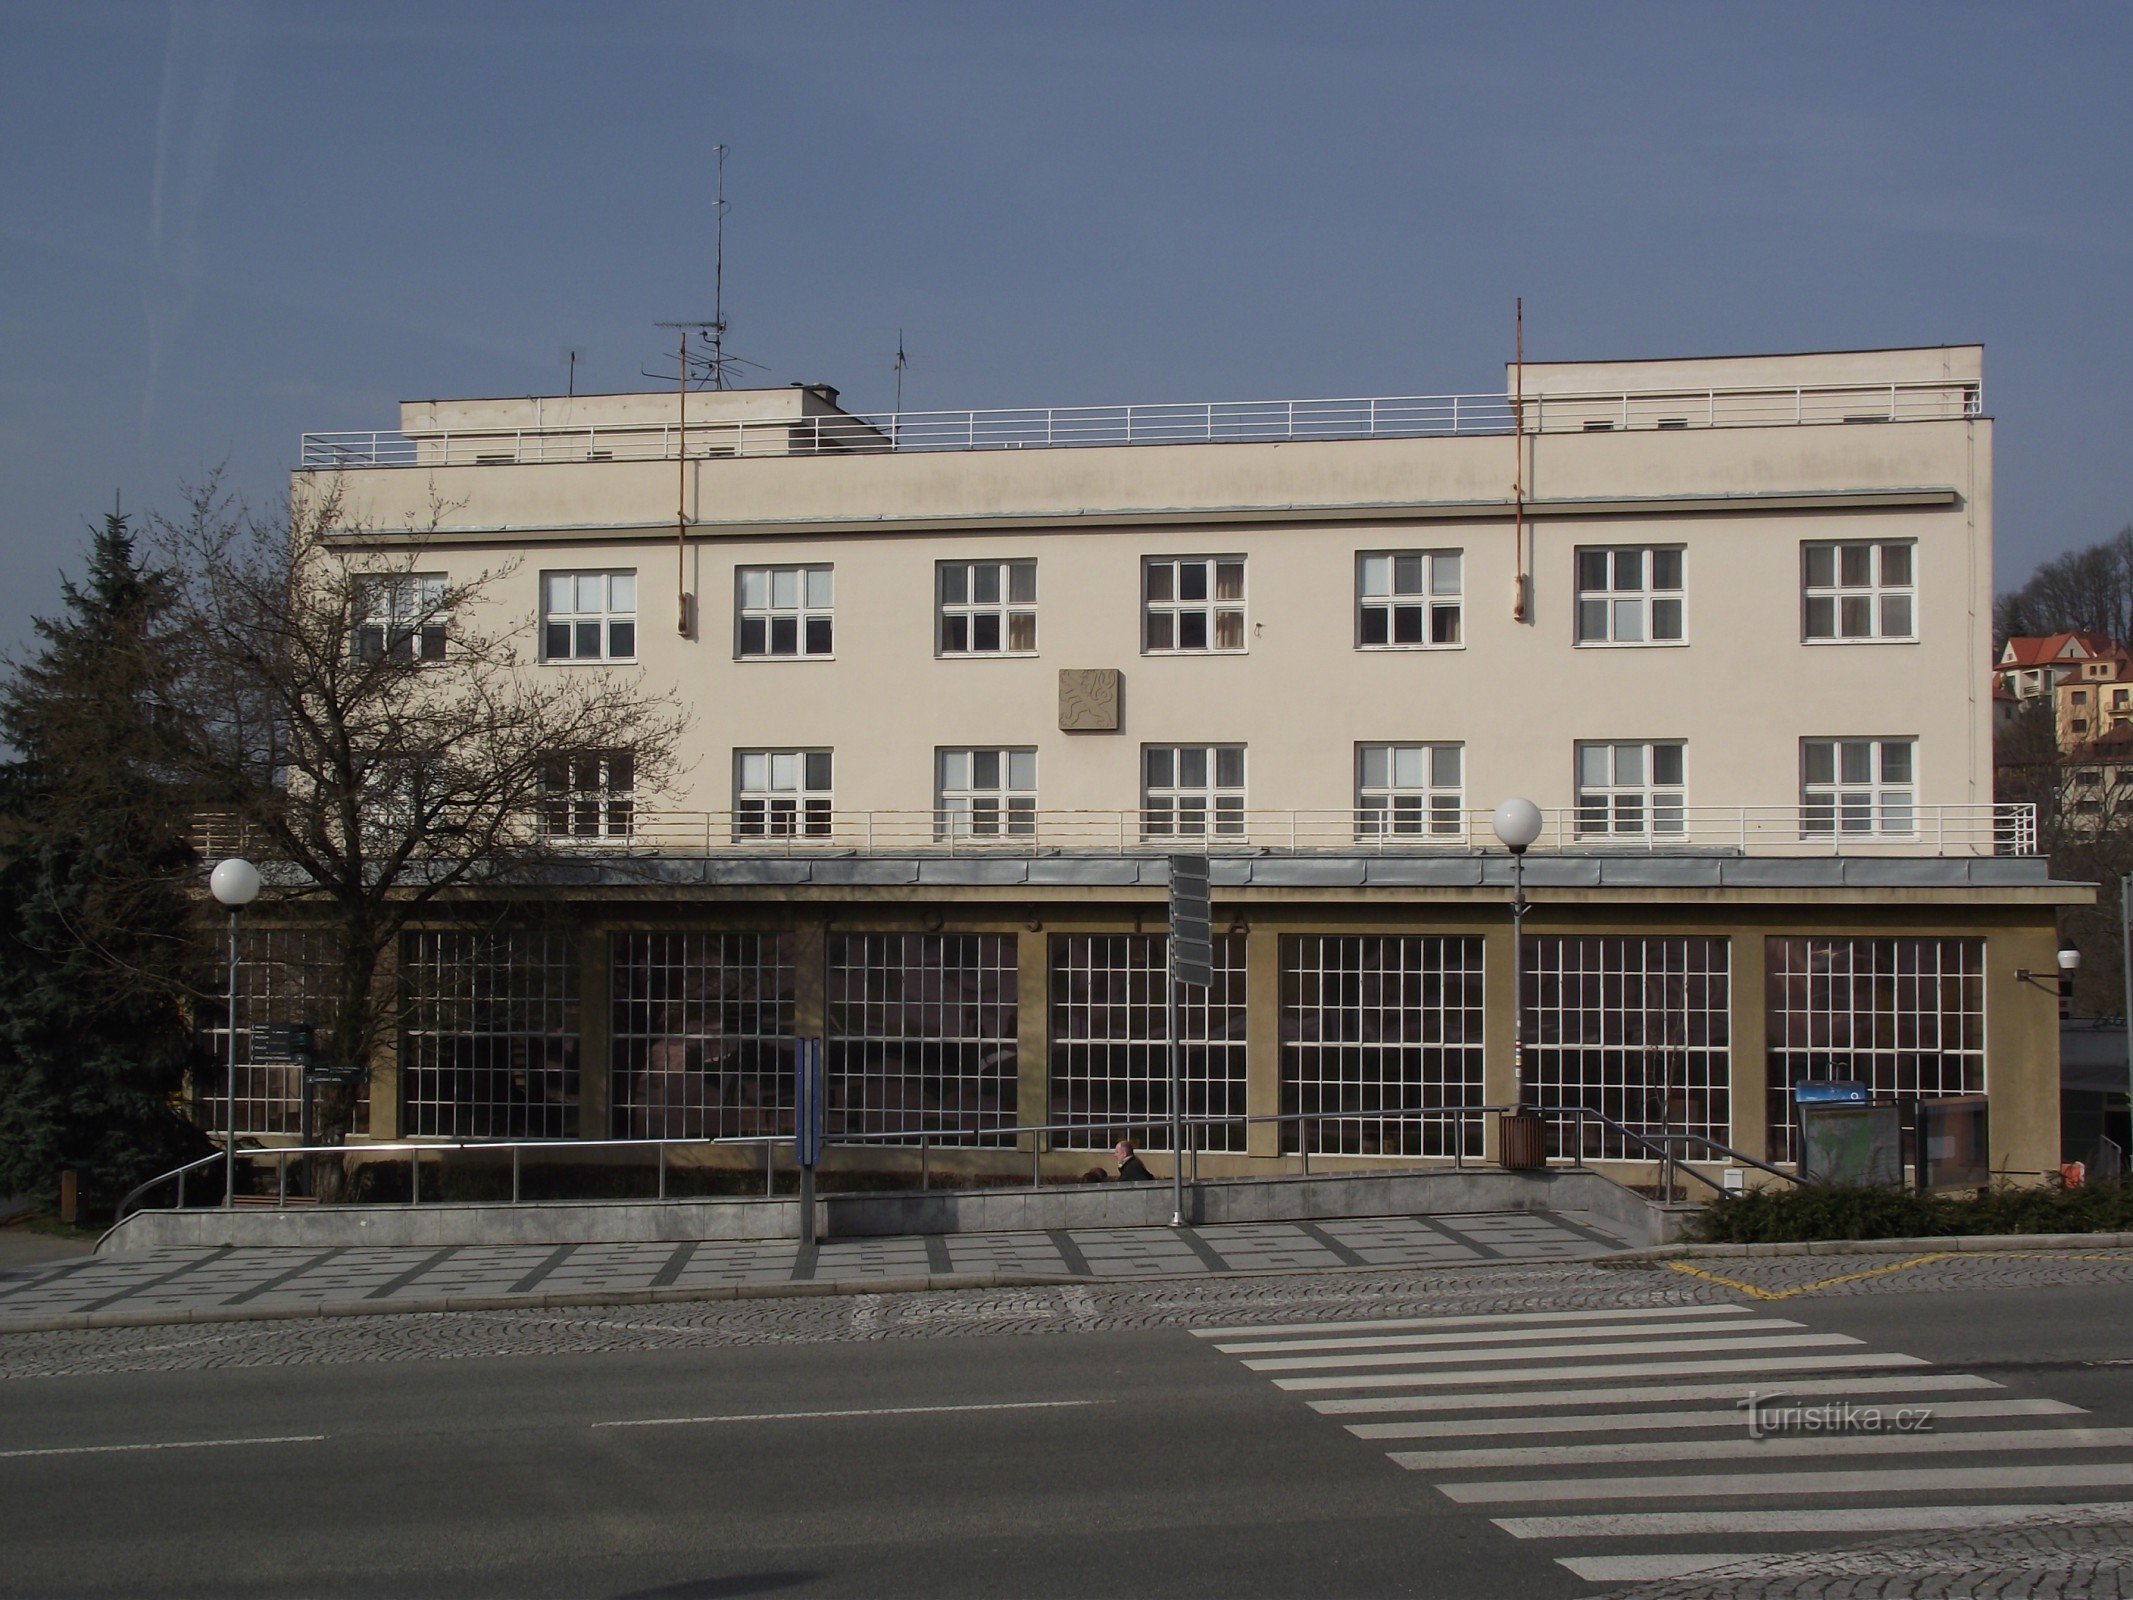 Luhačovice - oficiu poștal